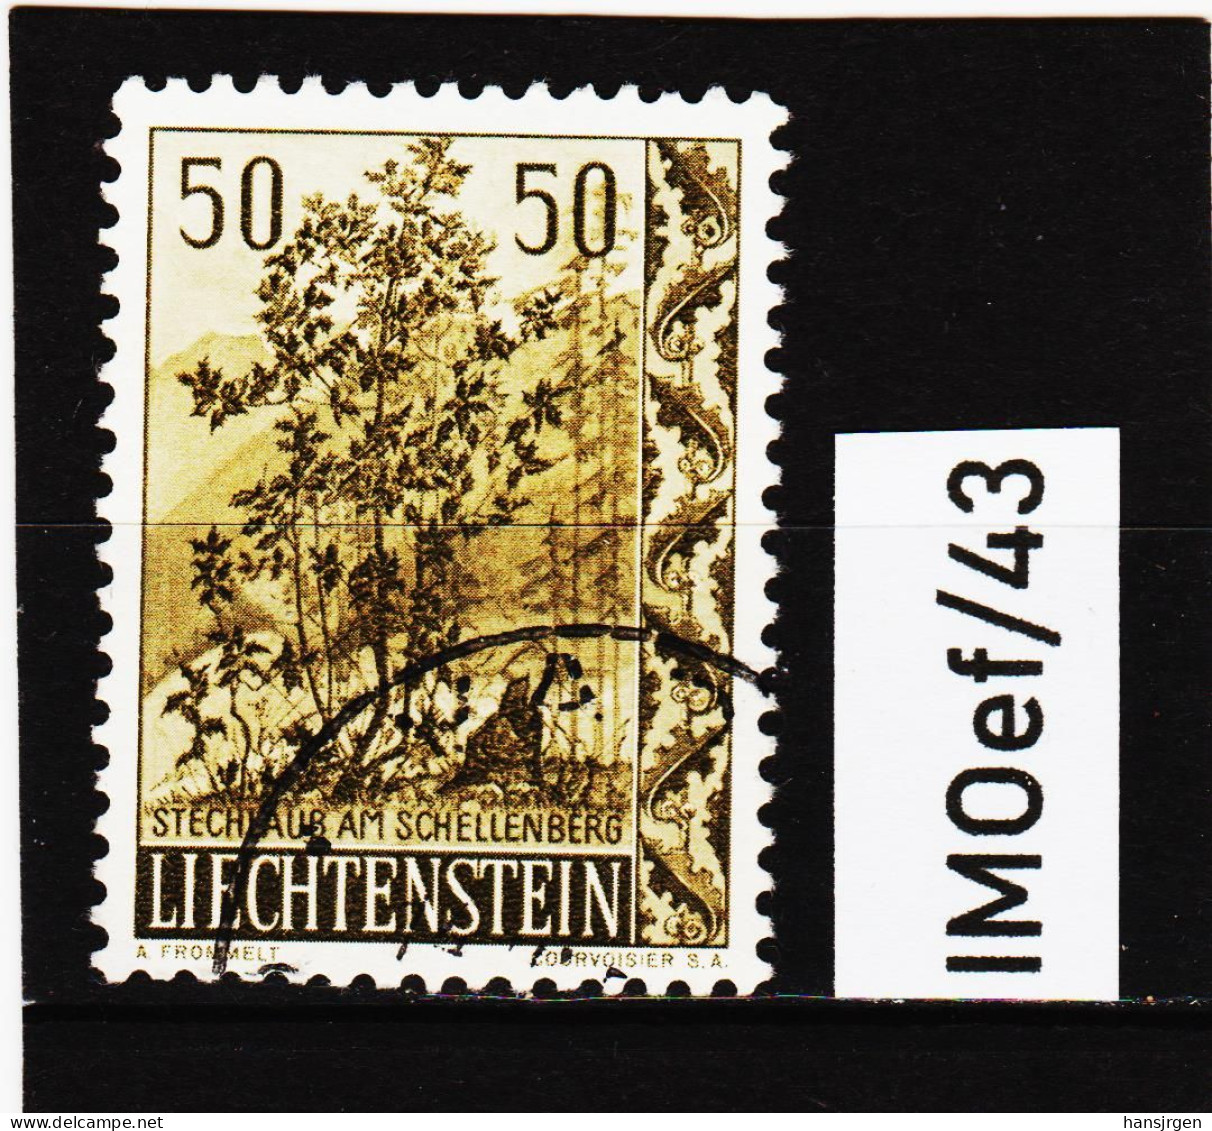 IMOef/43  LIECHTENSTEIN 1958  MICHL  372  Used / Gestempelt SIEHE ABBILDUNG - Used Stamps